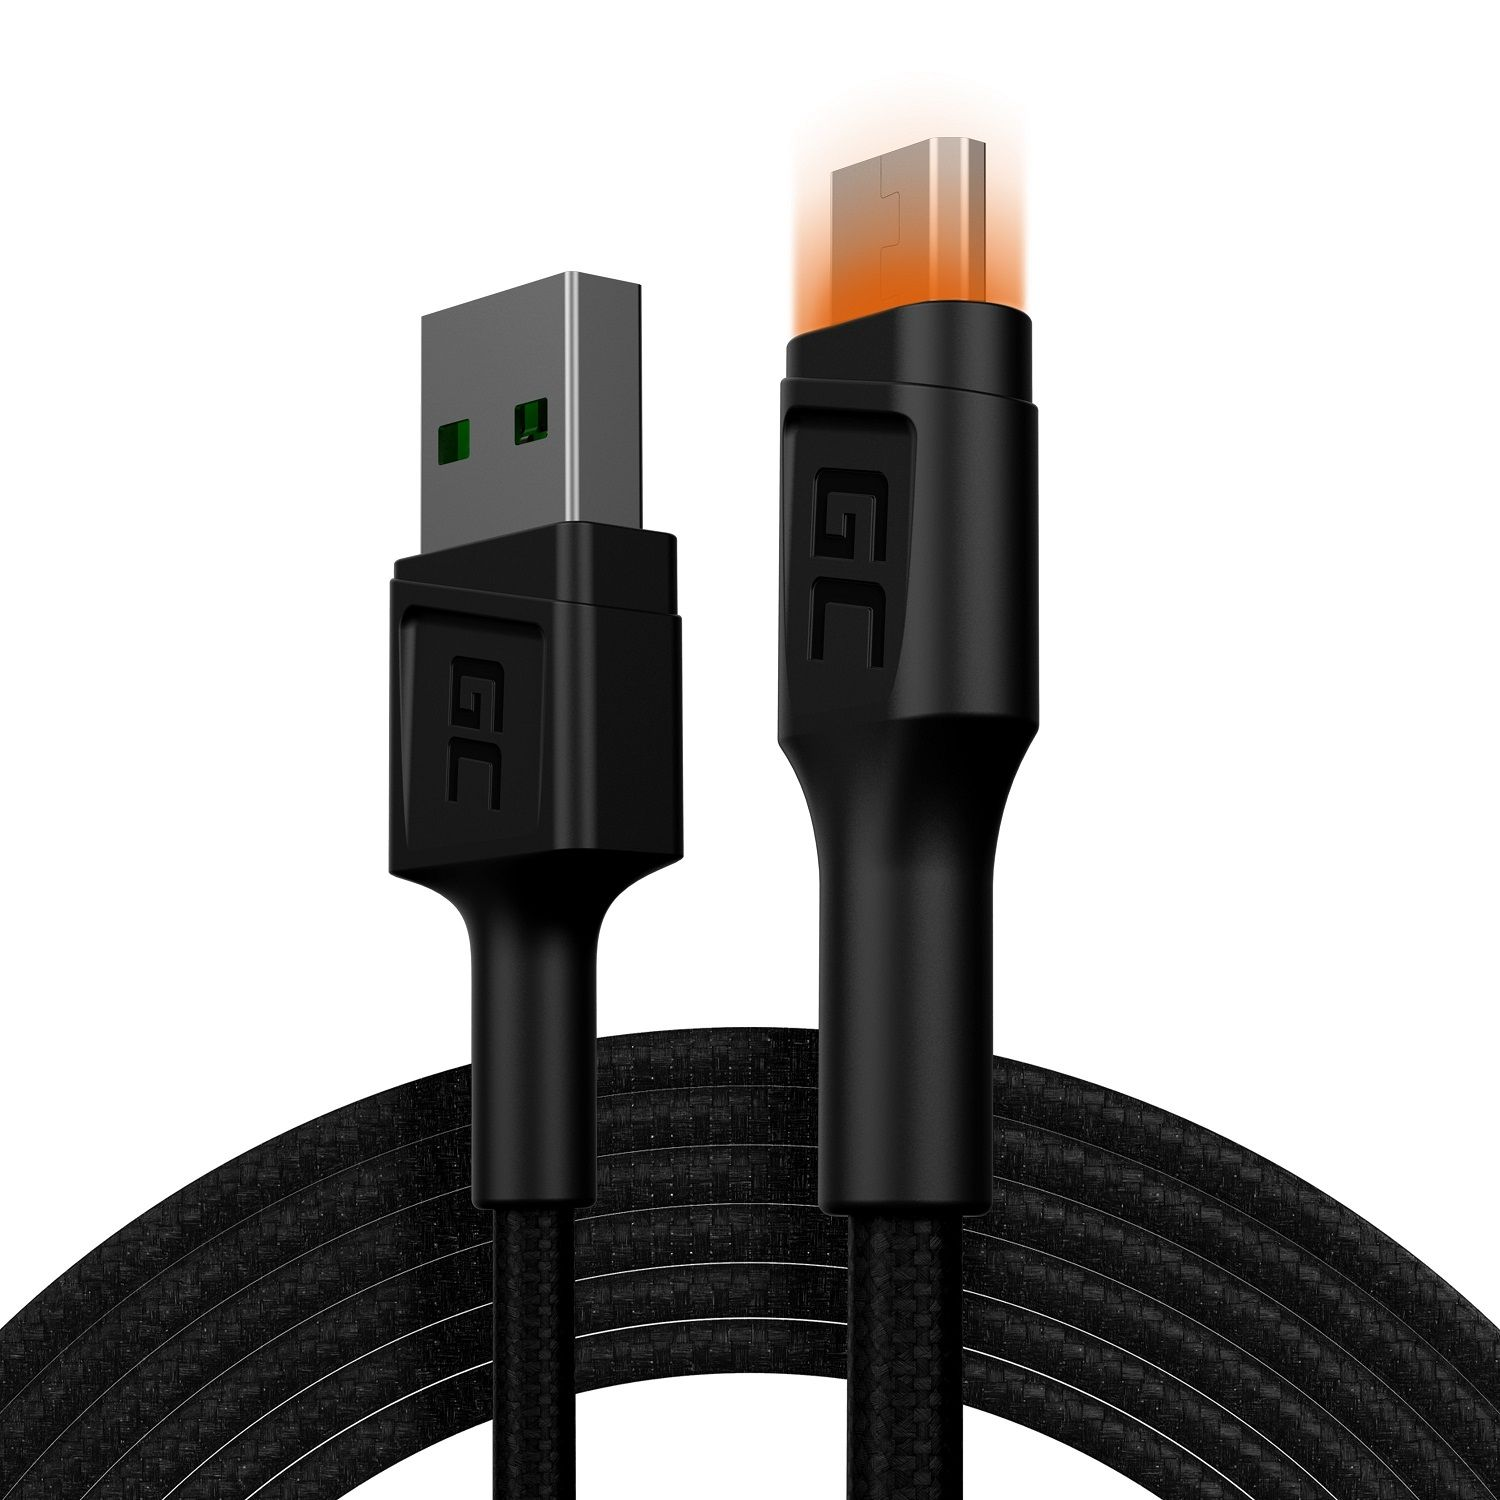 GREEN CELL 2 (PC), m USB-A Zubehör Adapter microUSB-Kabel - Kabel schwarz und